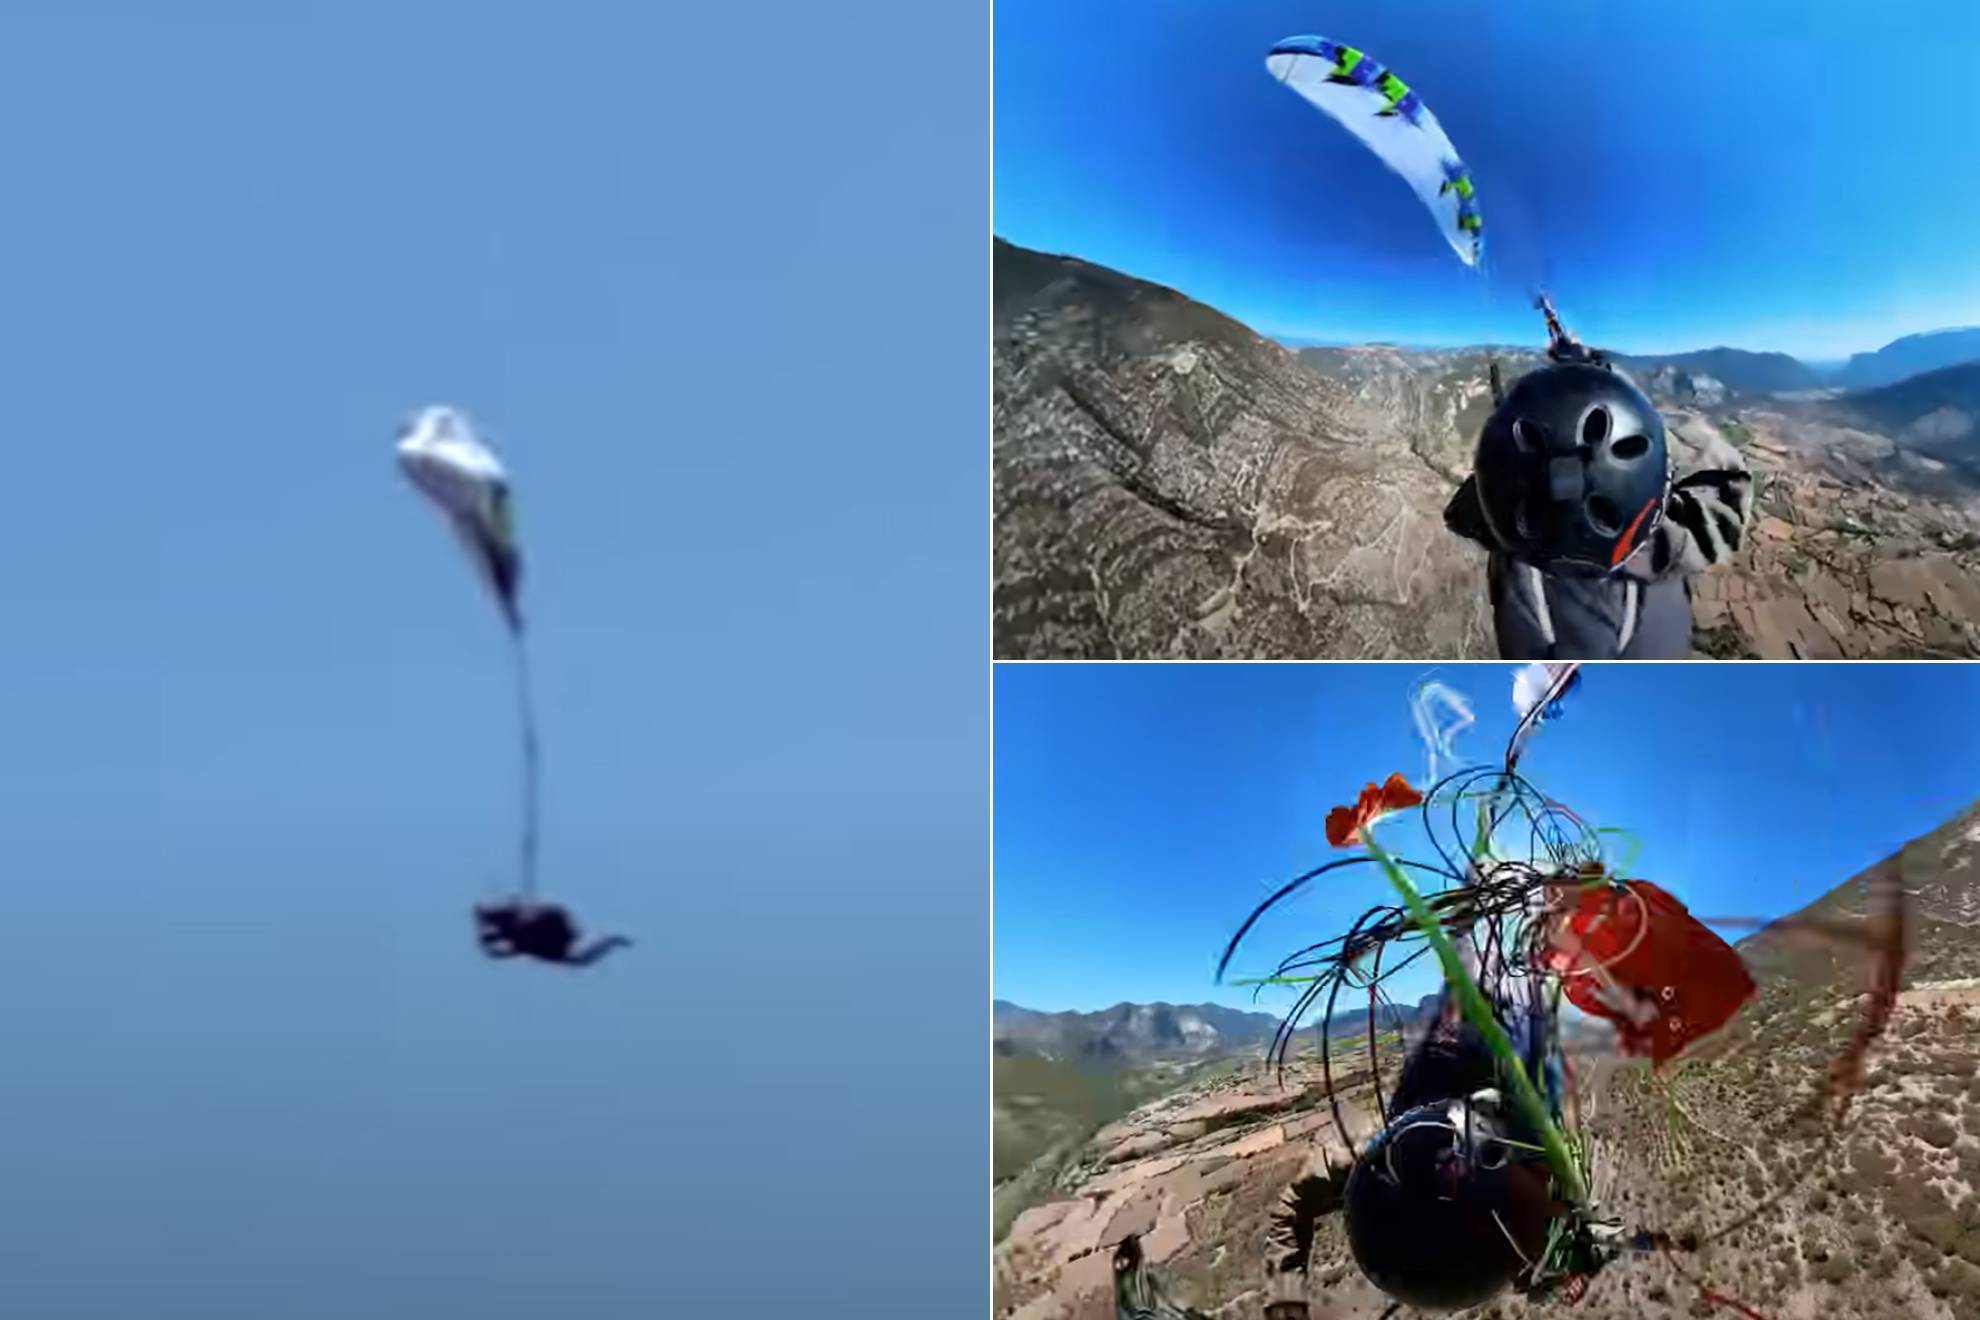 Un parapentista extremo se enreda con su paracaídas... y salva su vida en el último segundo